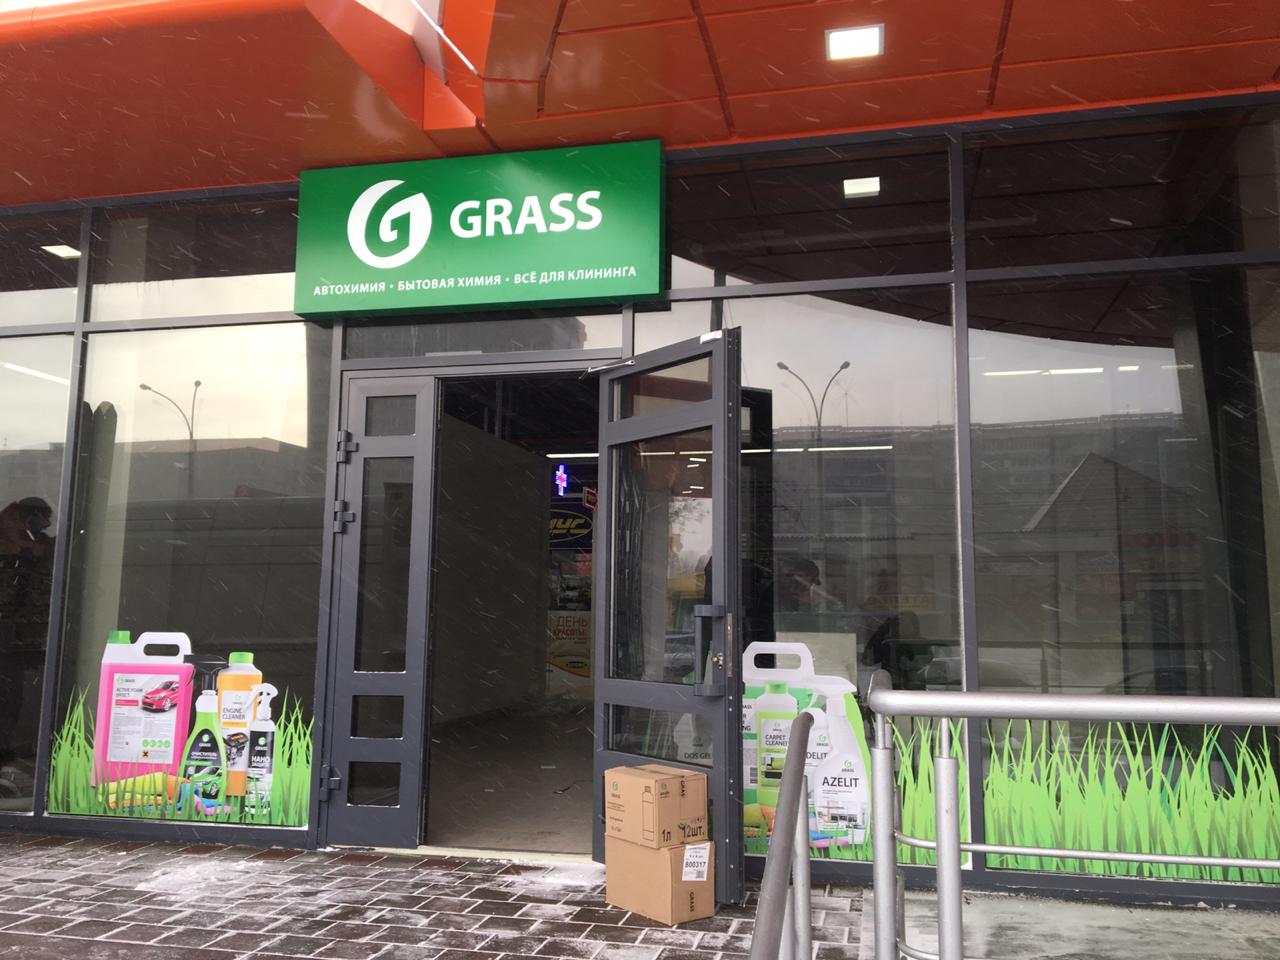 Граас. Магазин grass. Grass бытовая химия магазин. Grass фирменный магазин. Магазин Грасс вывеска.